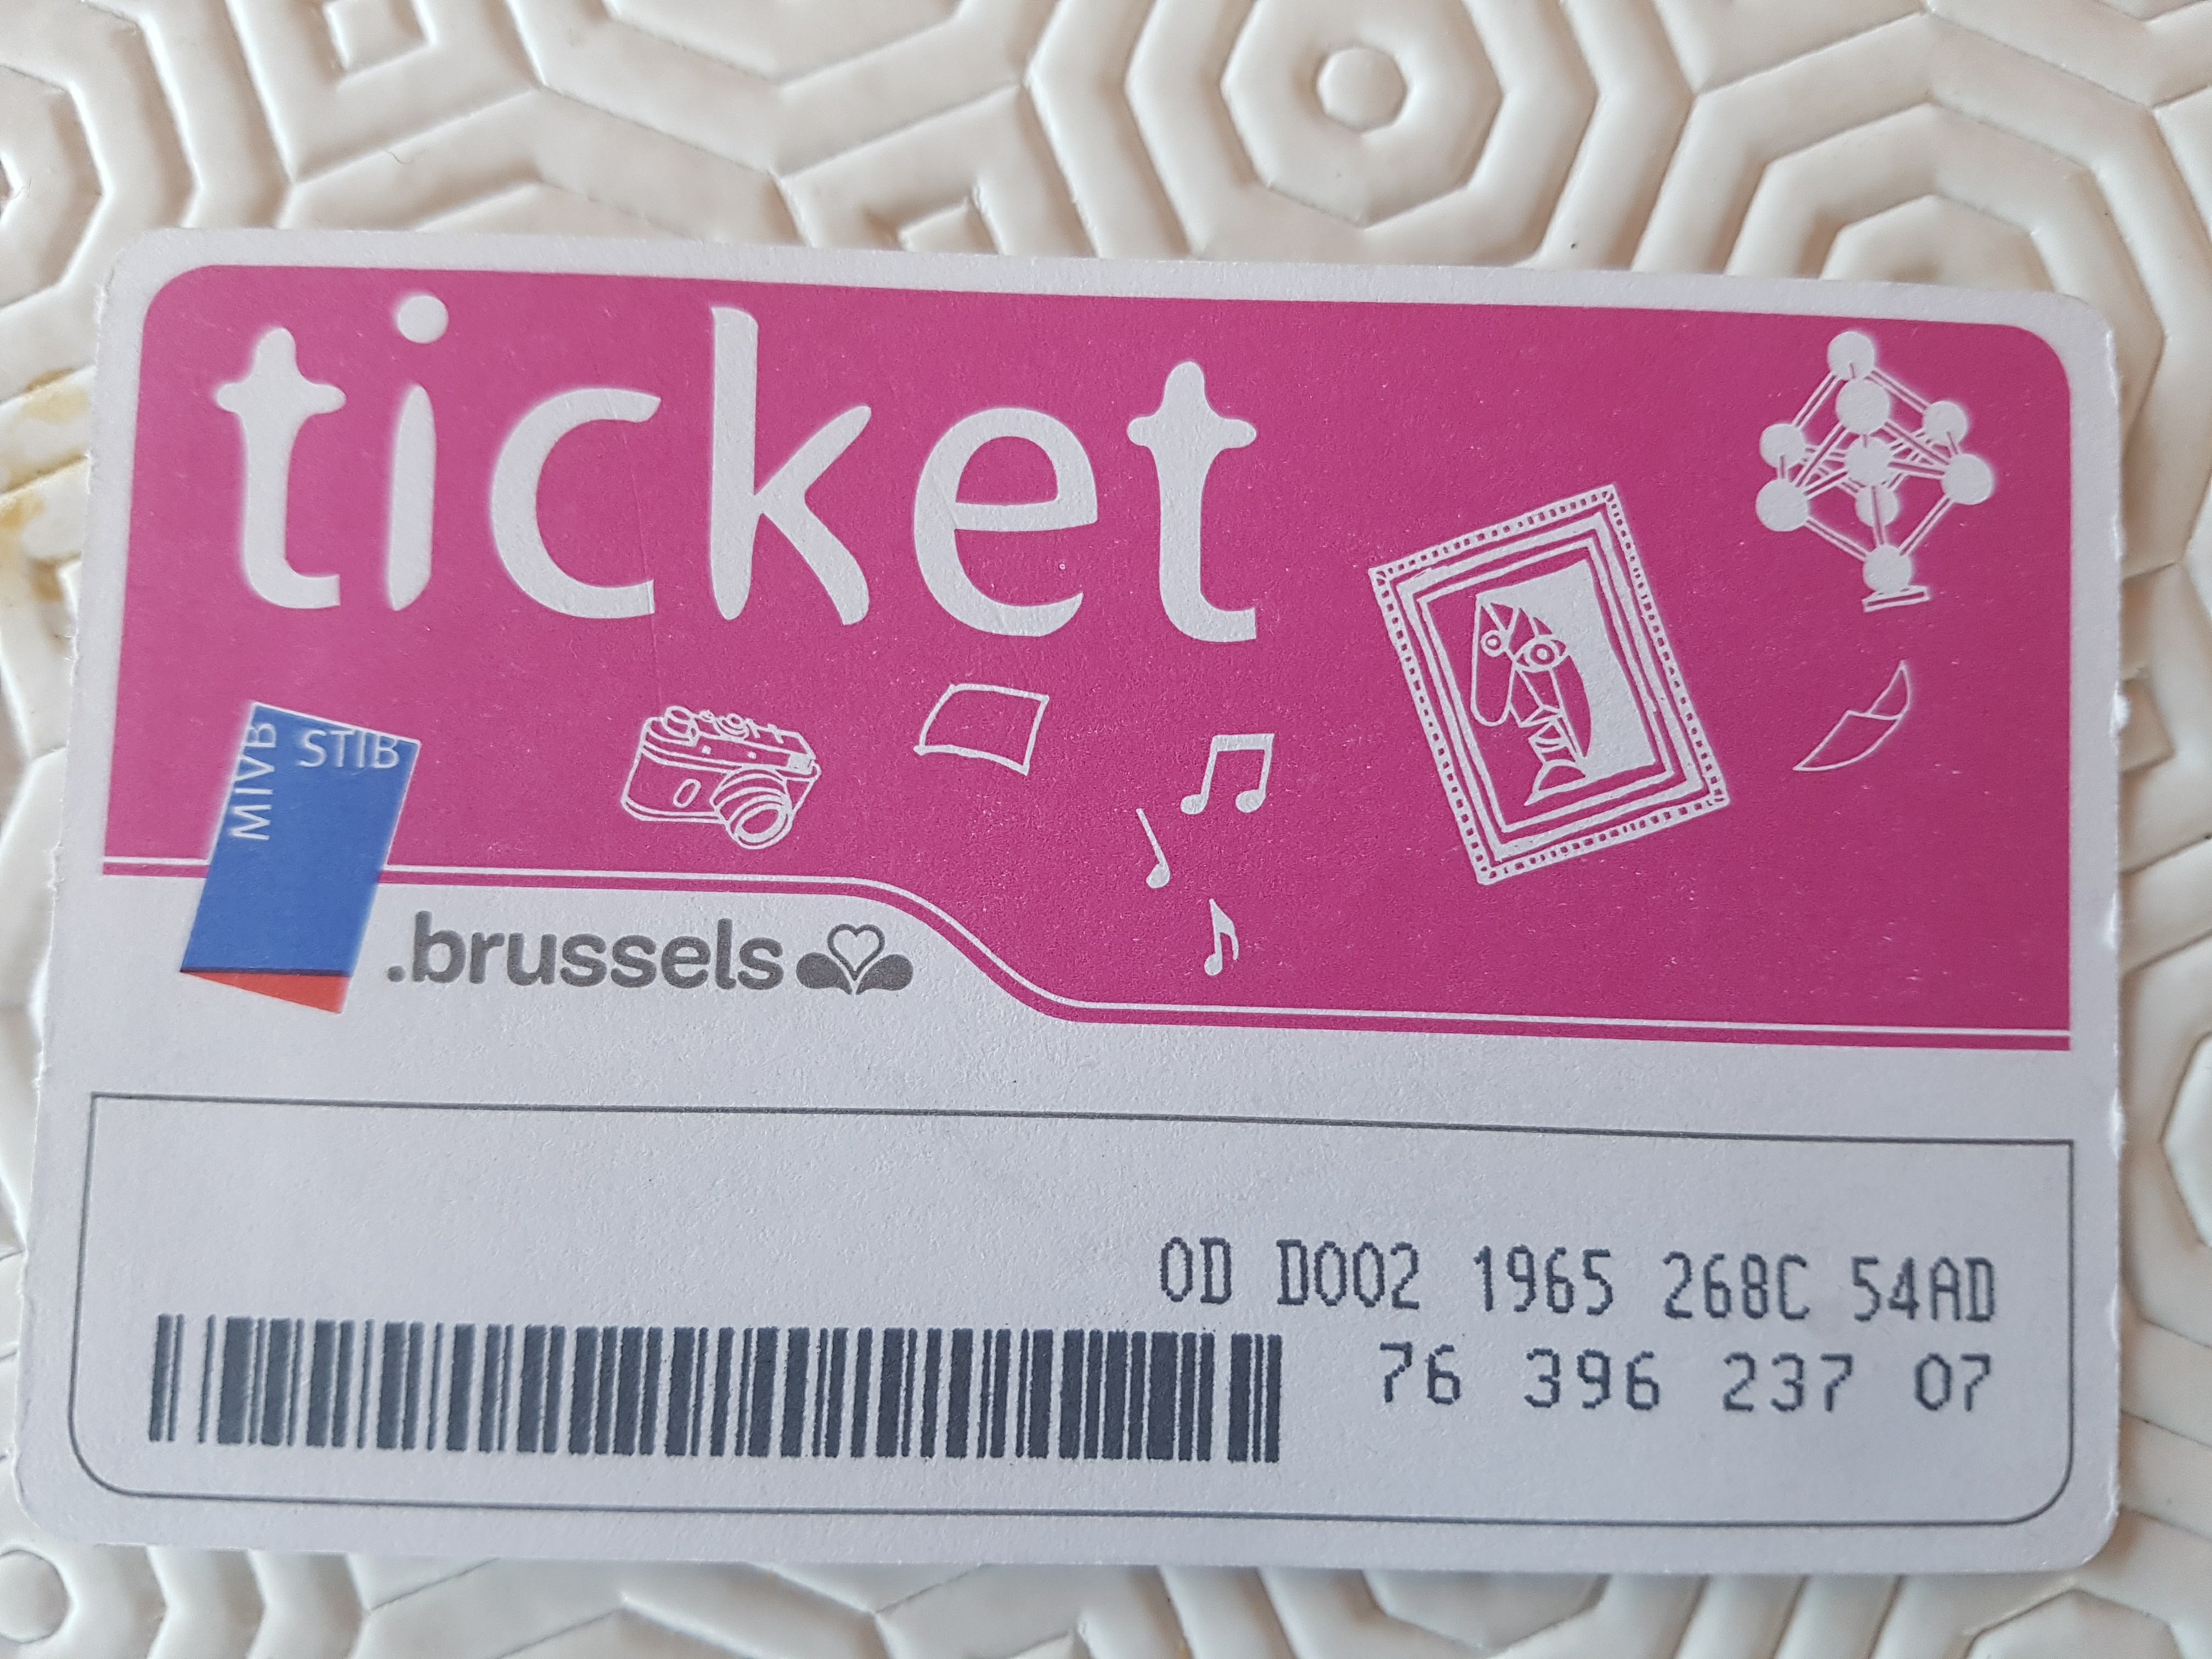 Metro-Ticket-Brussels.jpg